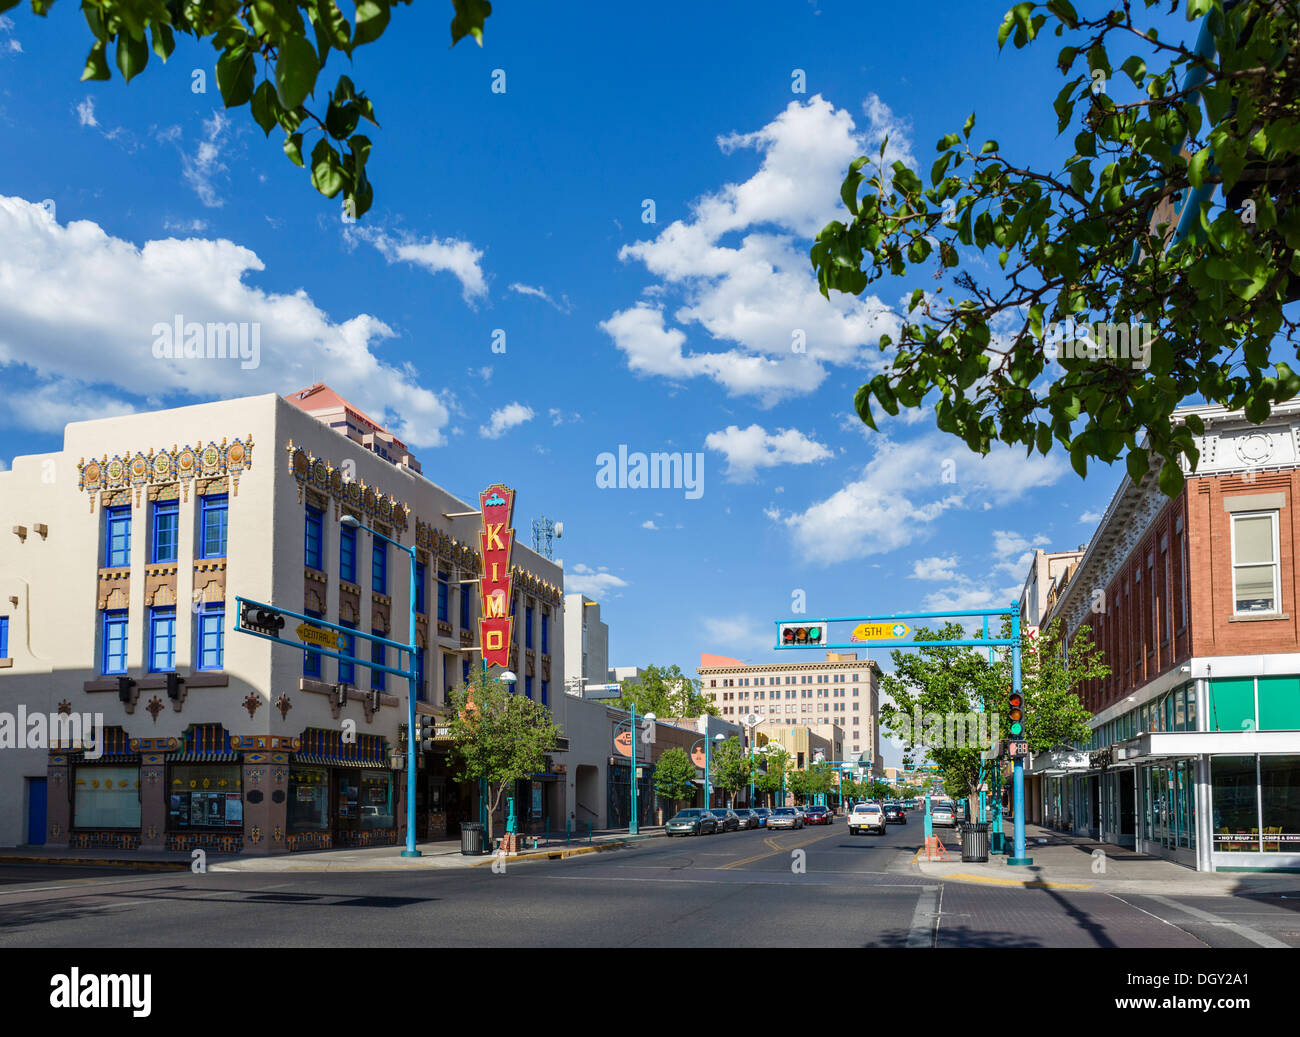 L'avenue centrale (ancienne route 66) et KiMo Theatre historique au centre-ville d'Albuquerque, New Mexico, USA Banque D'Images